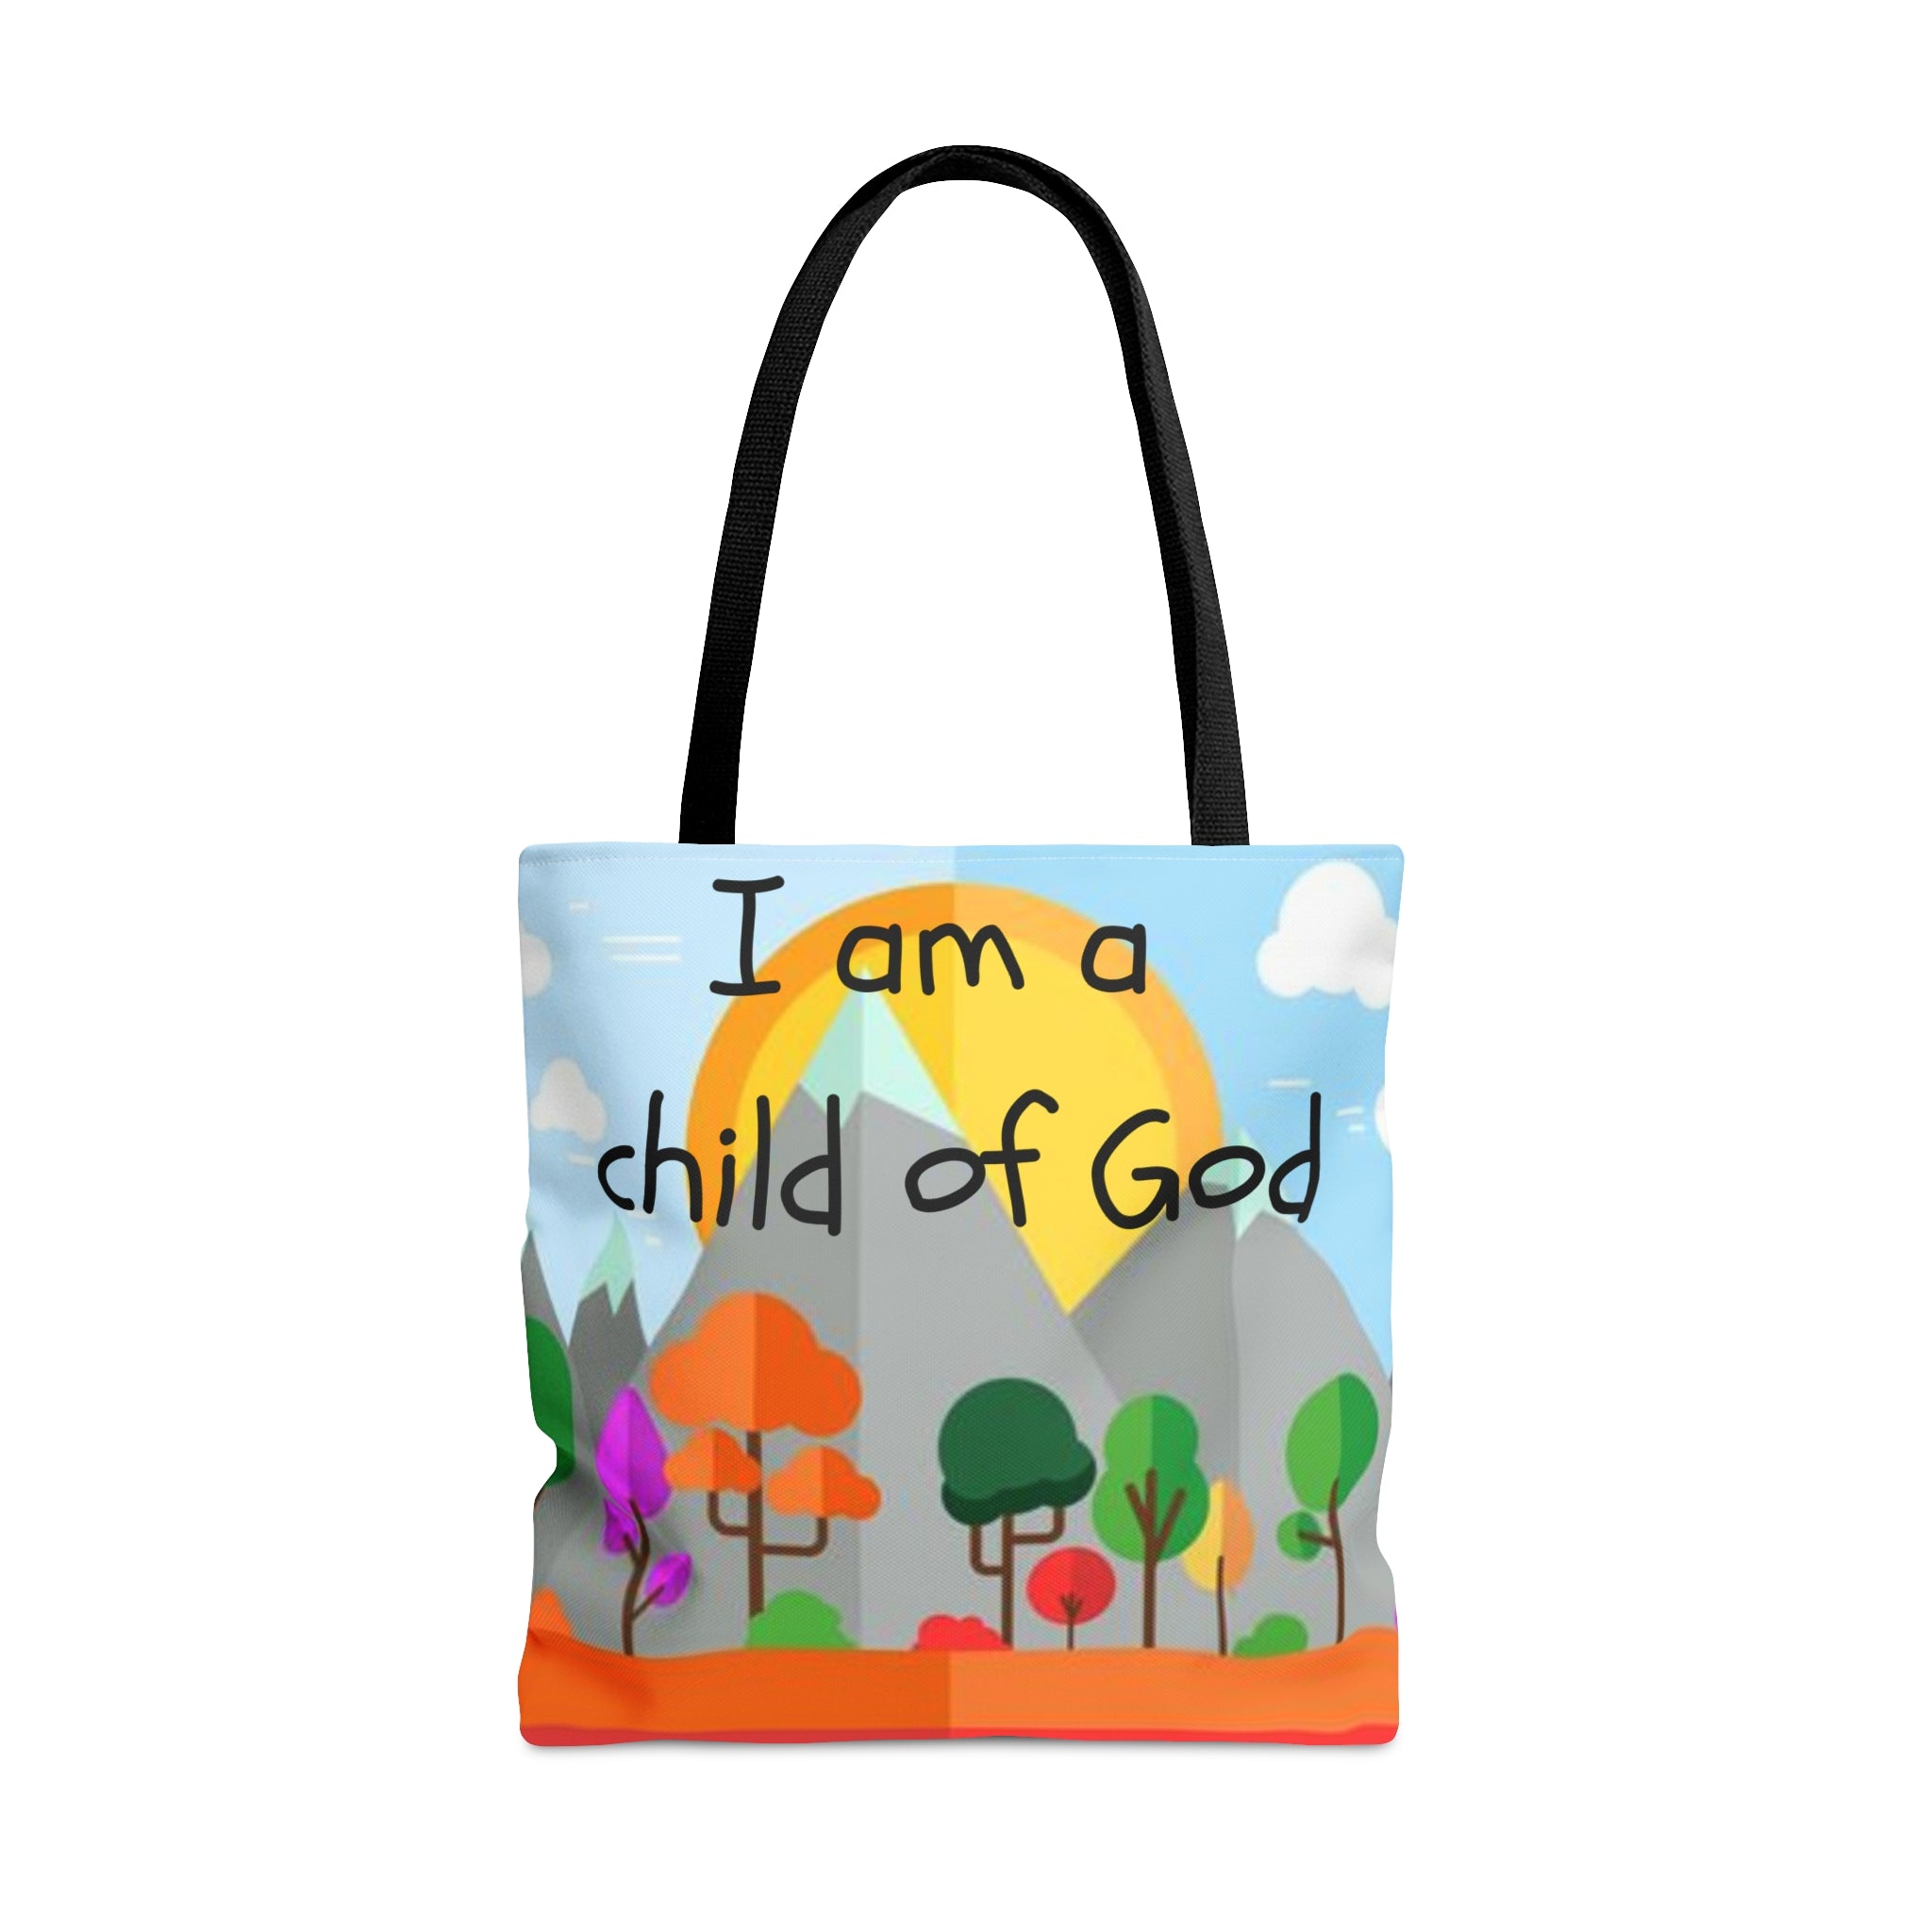 "Child of God" Tote Bag